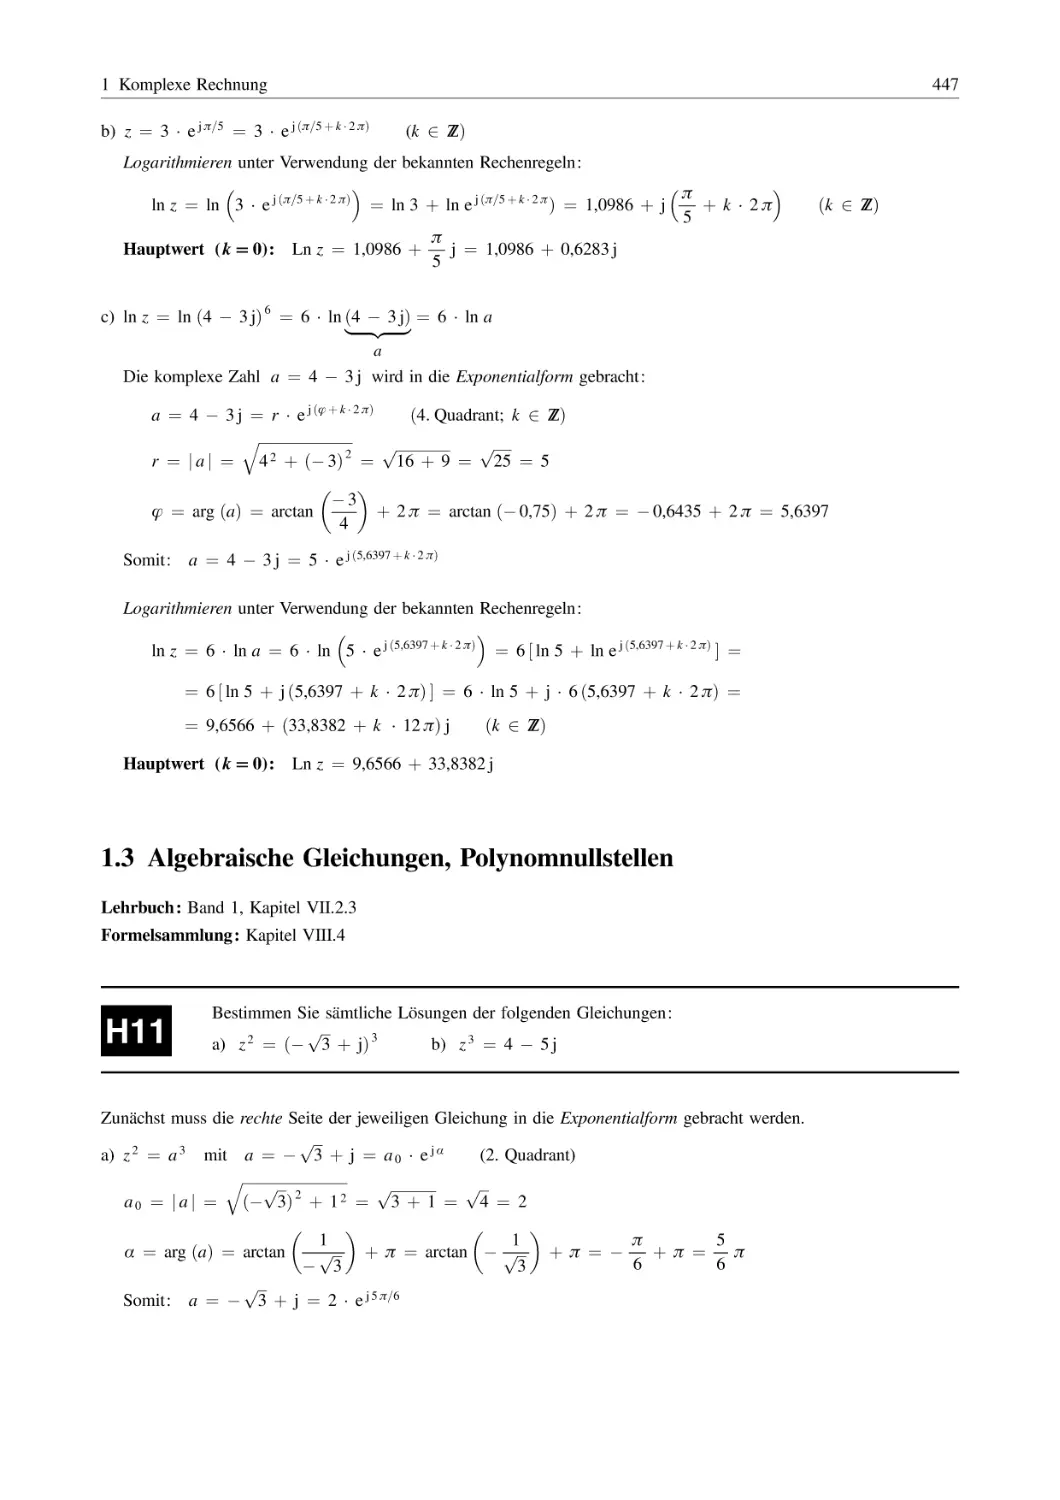 1.3 Algebraische Gleichungen, Polynomnullstellen